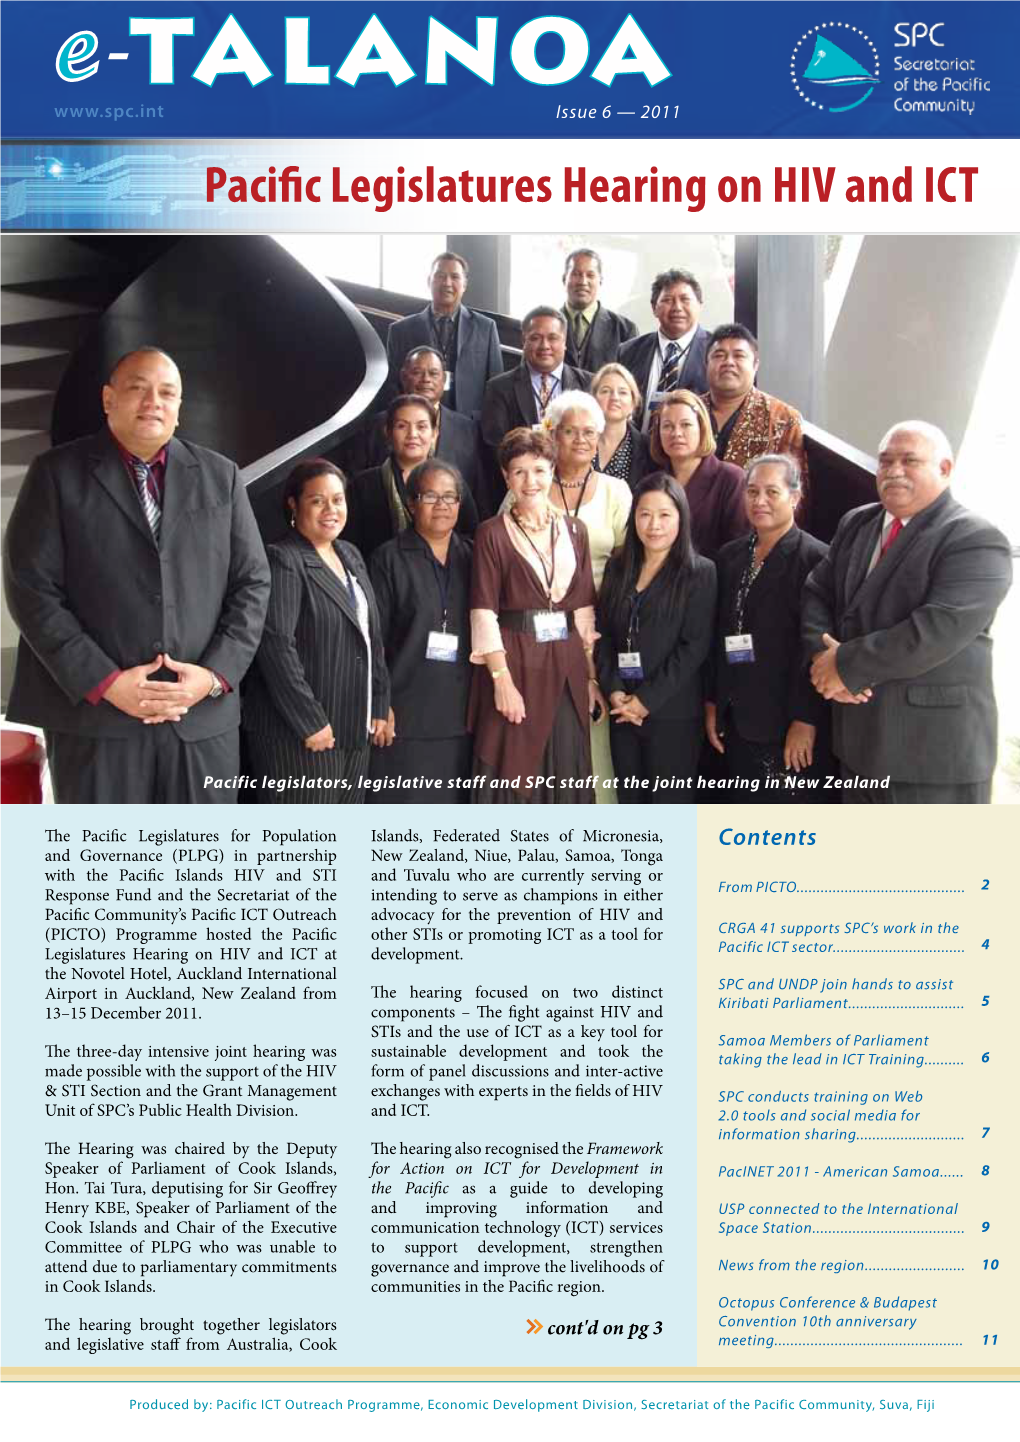 E-TALANOA Issue 6 — 2011